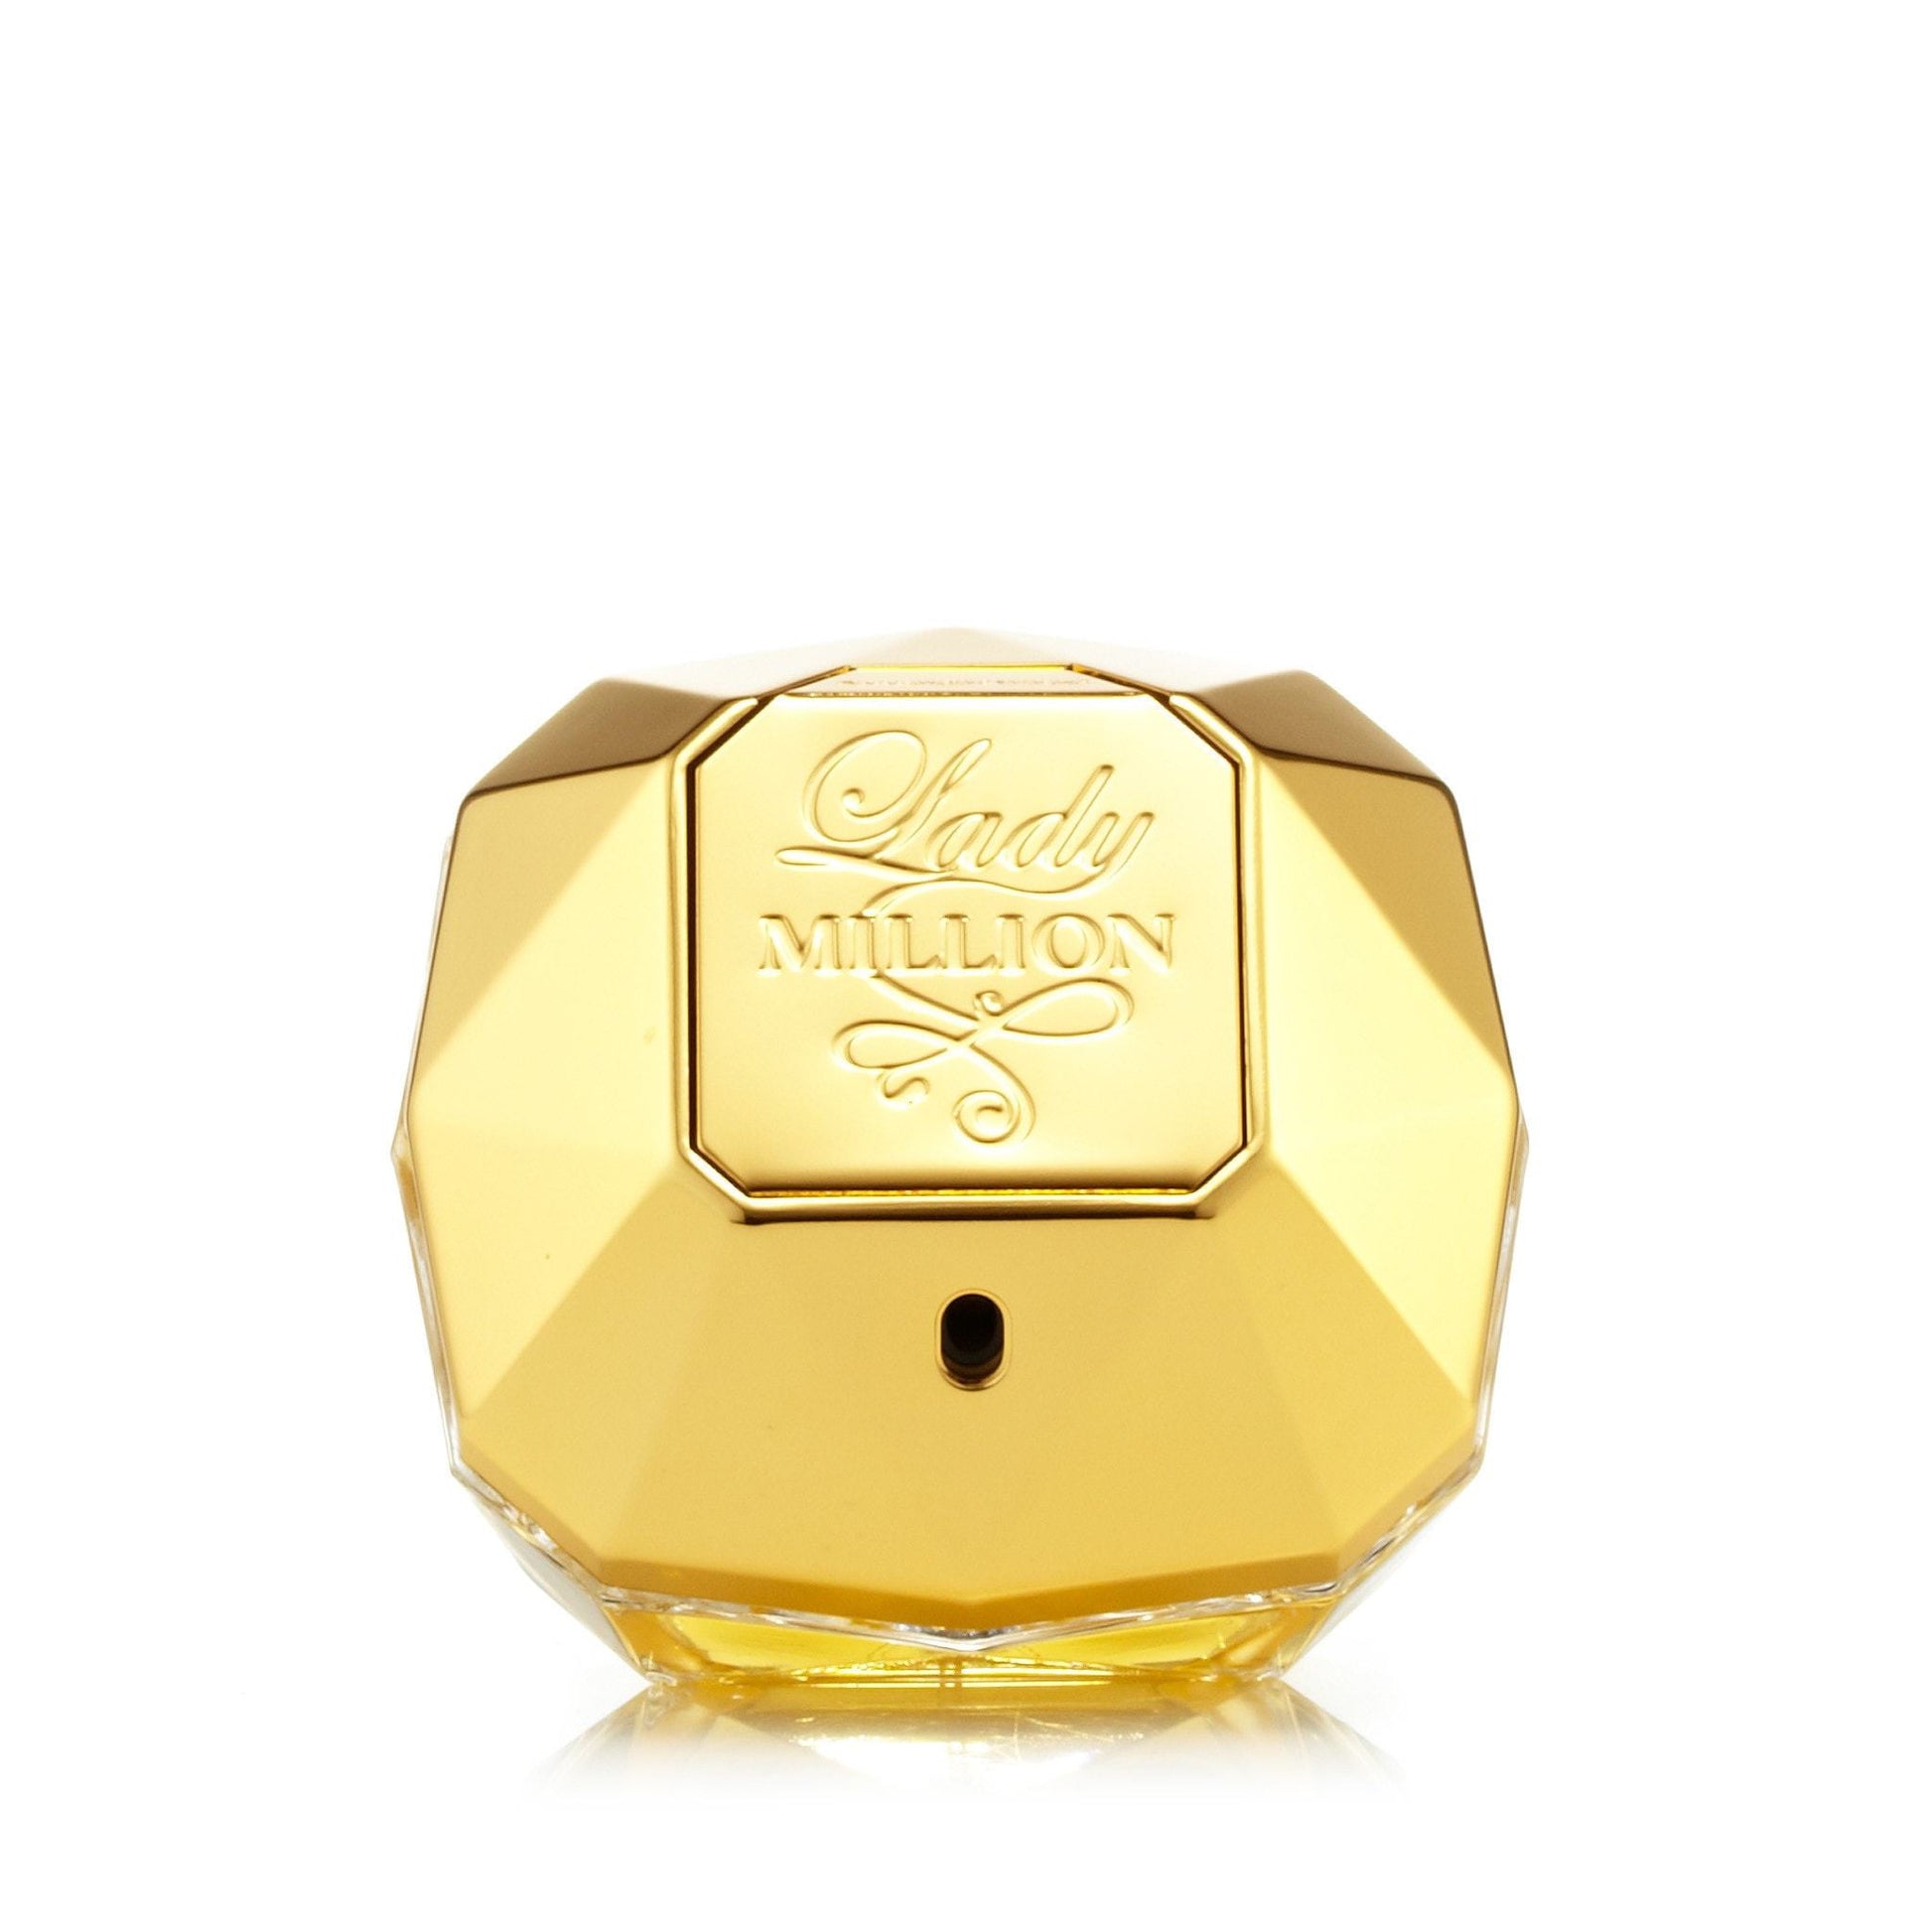 Lady Million Eau de Parfum Spray for Women by Paco Rabanne, Product image 1